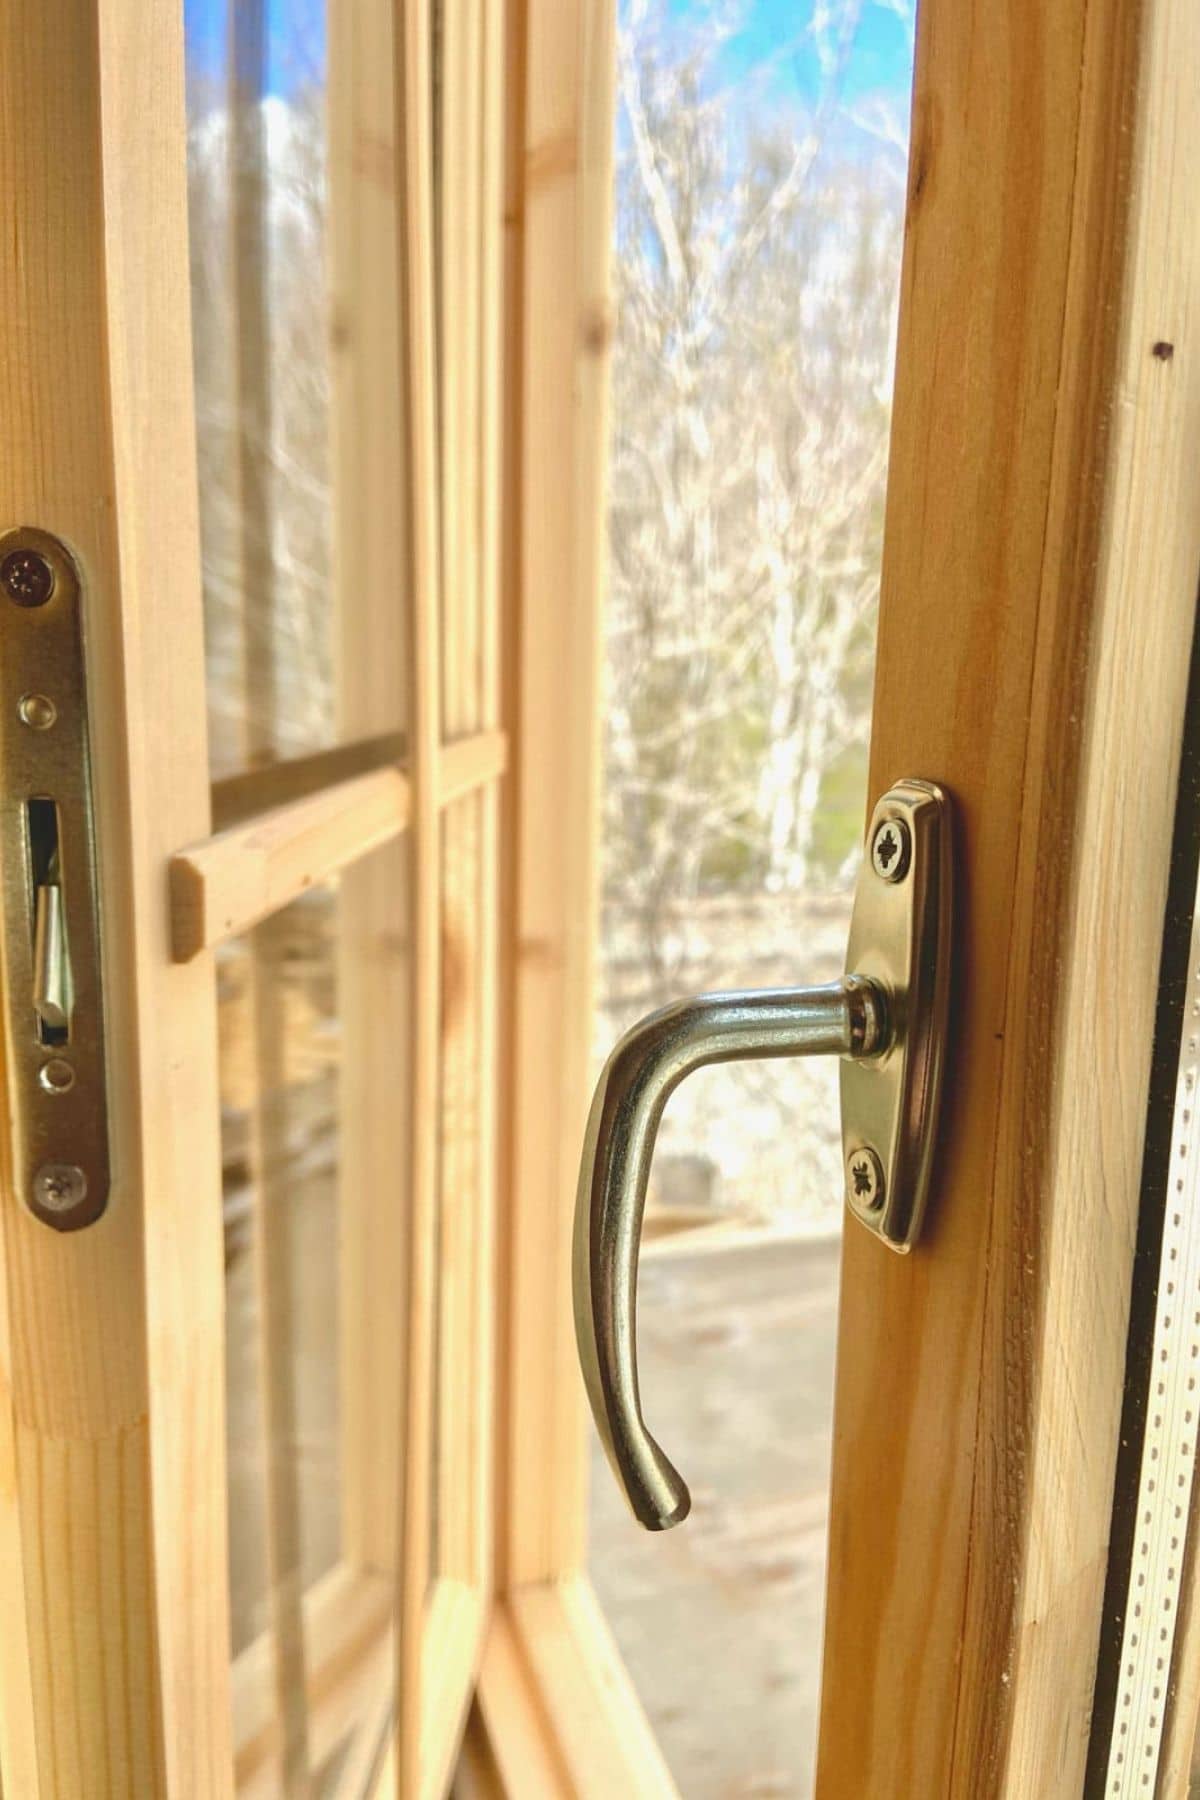 handle on log cabin wood door